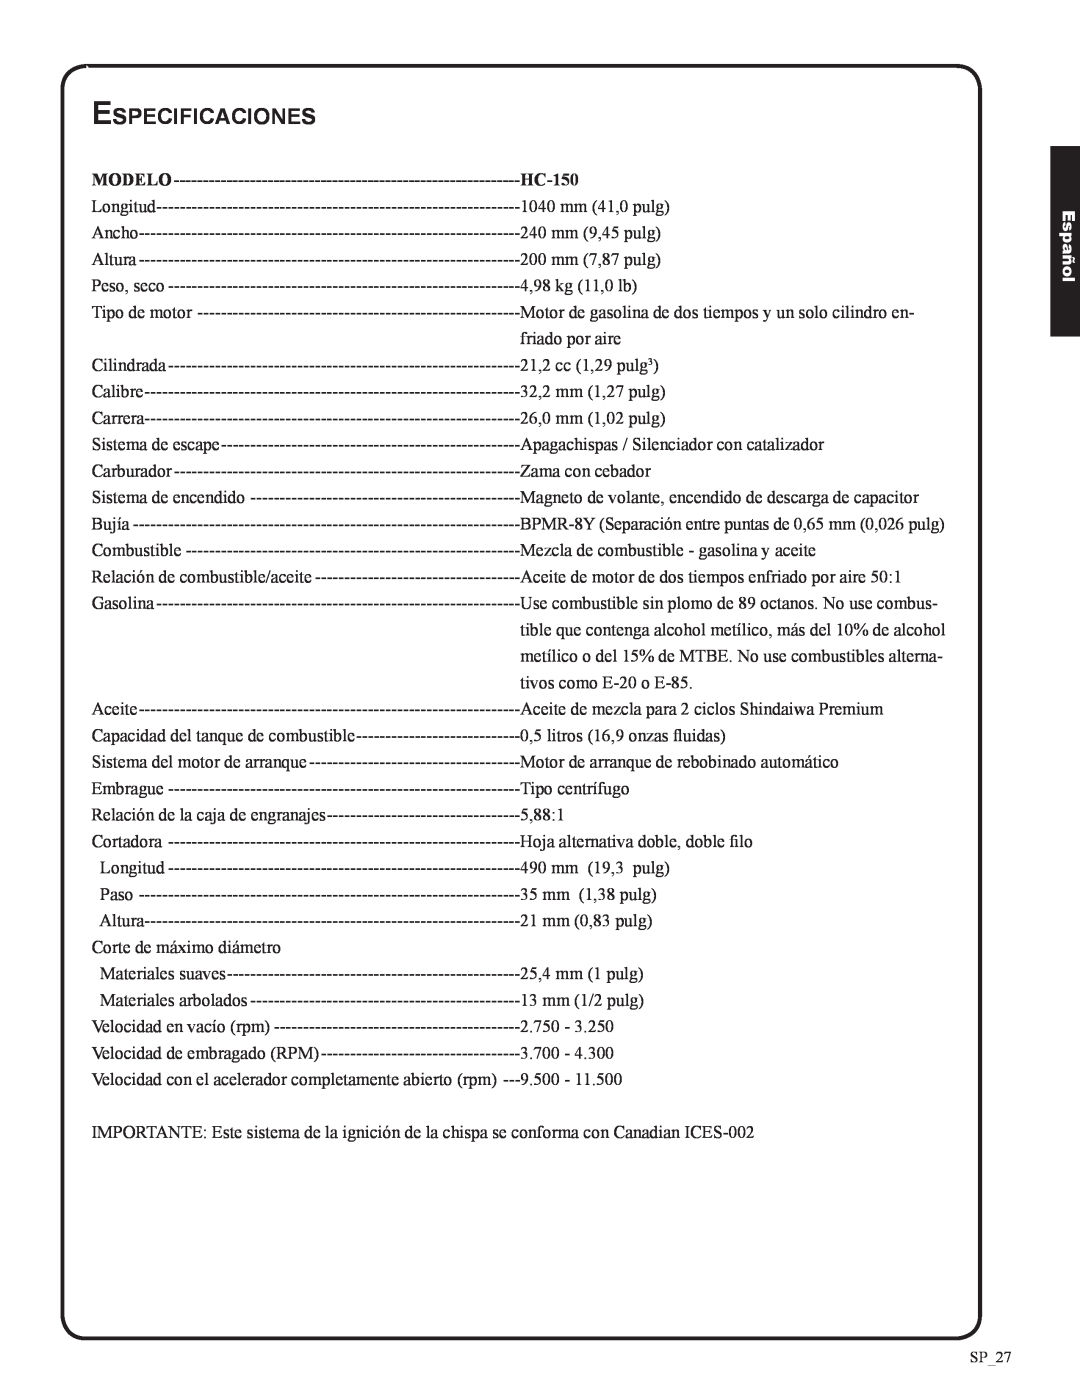 Shindaiwa 82053, DH212 manual Especificaciones, Modelo, HC-150, Español 